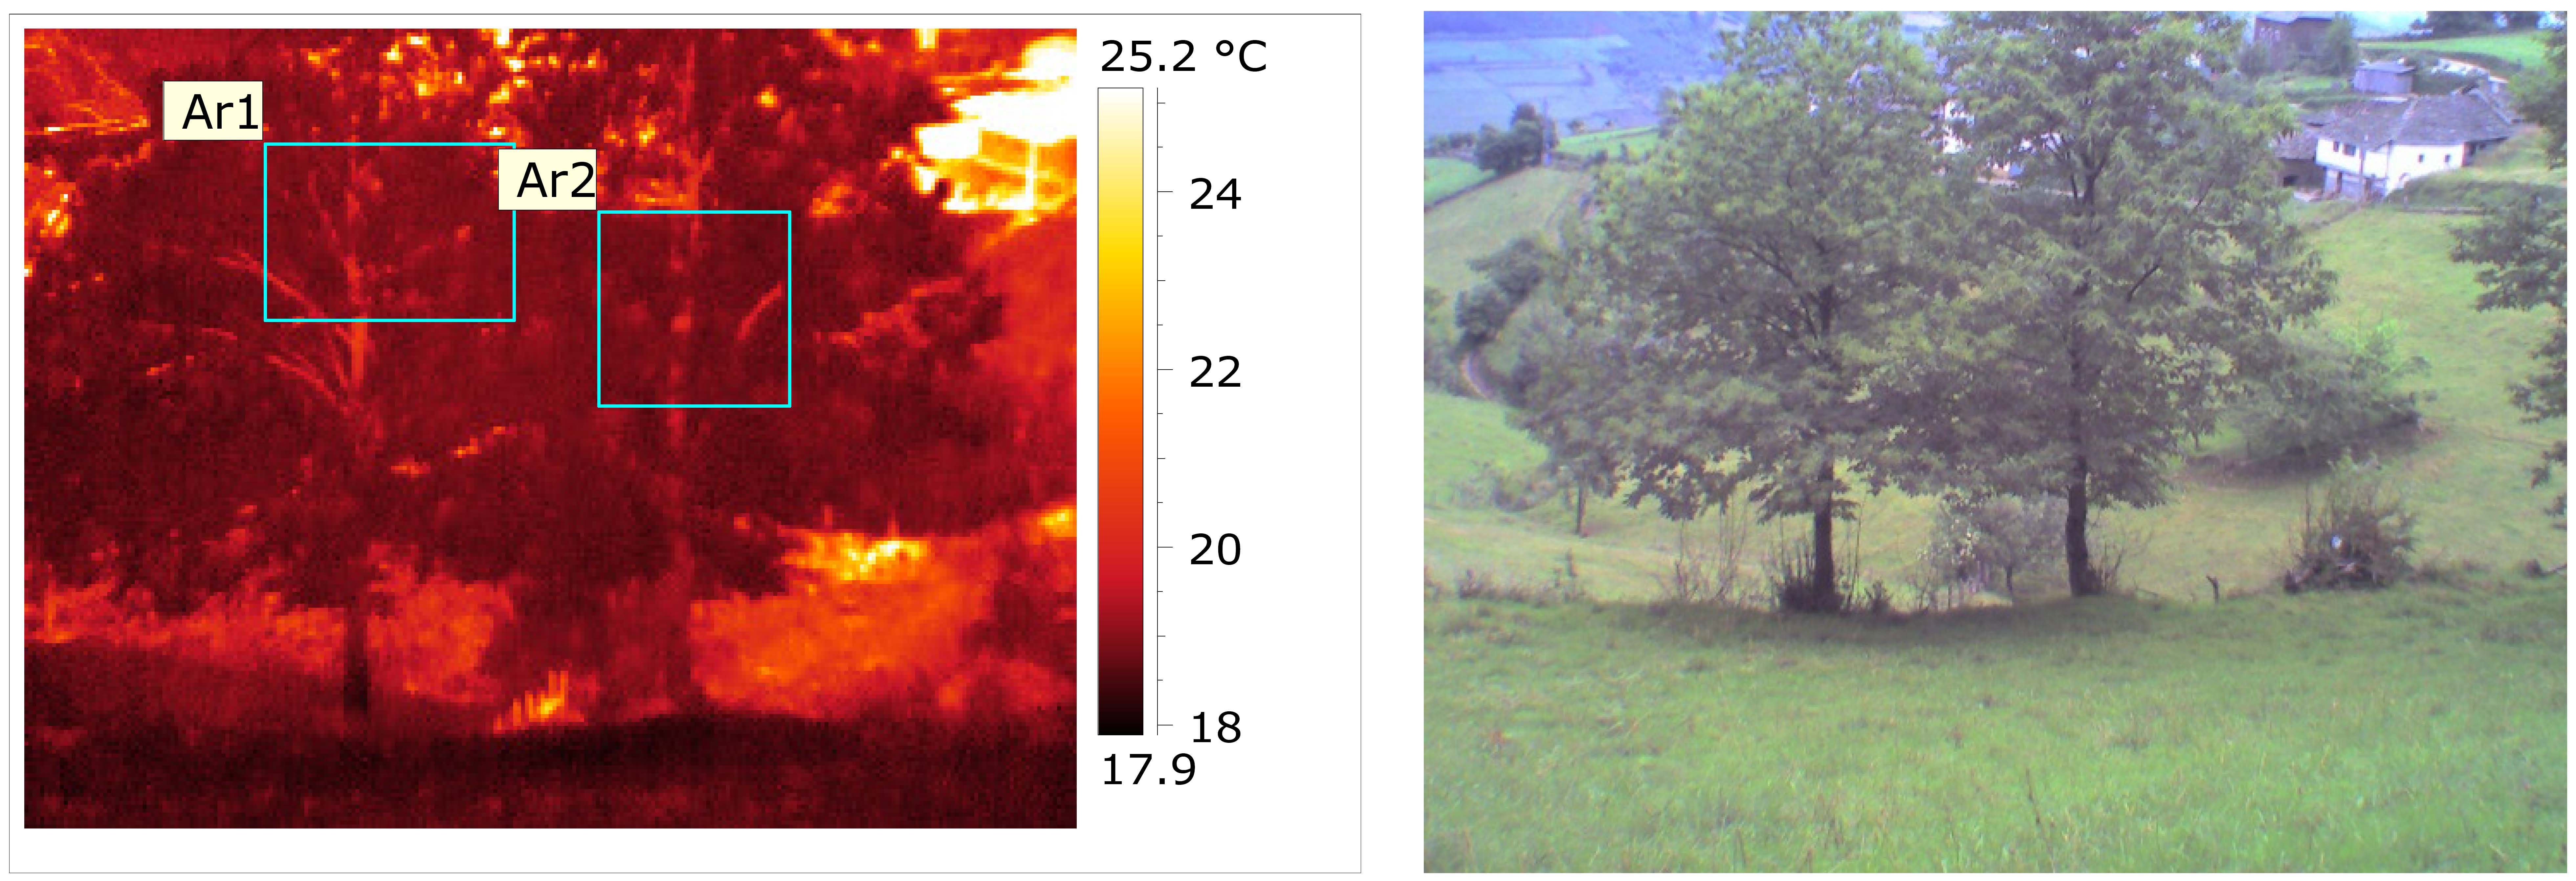 Imagen térmica con árbol sano (Ar2) y árbol enfermo (Ar1). Cangas del Narcea. © TRAGSATEC 2011. 